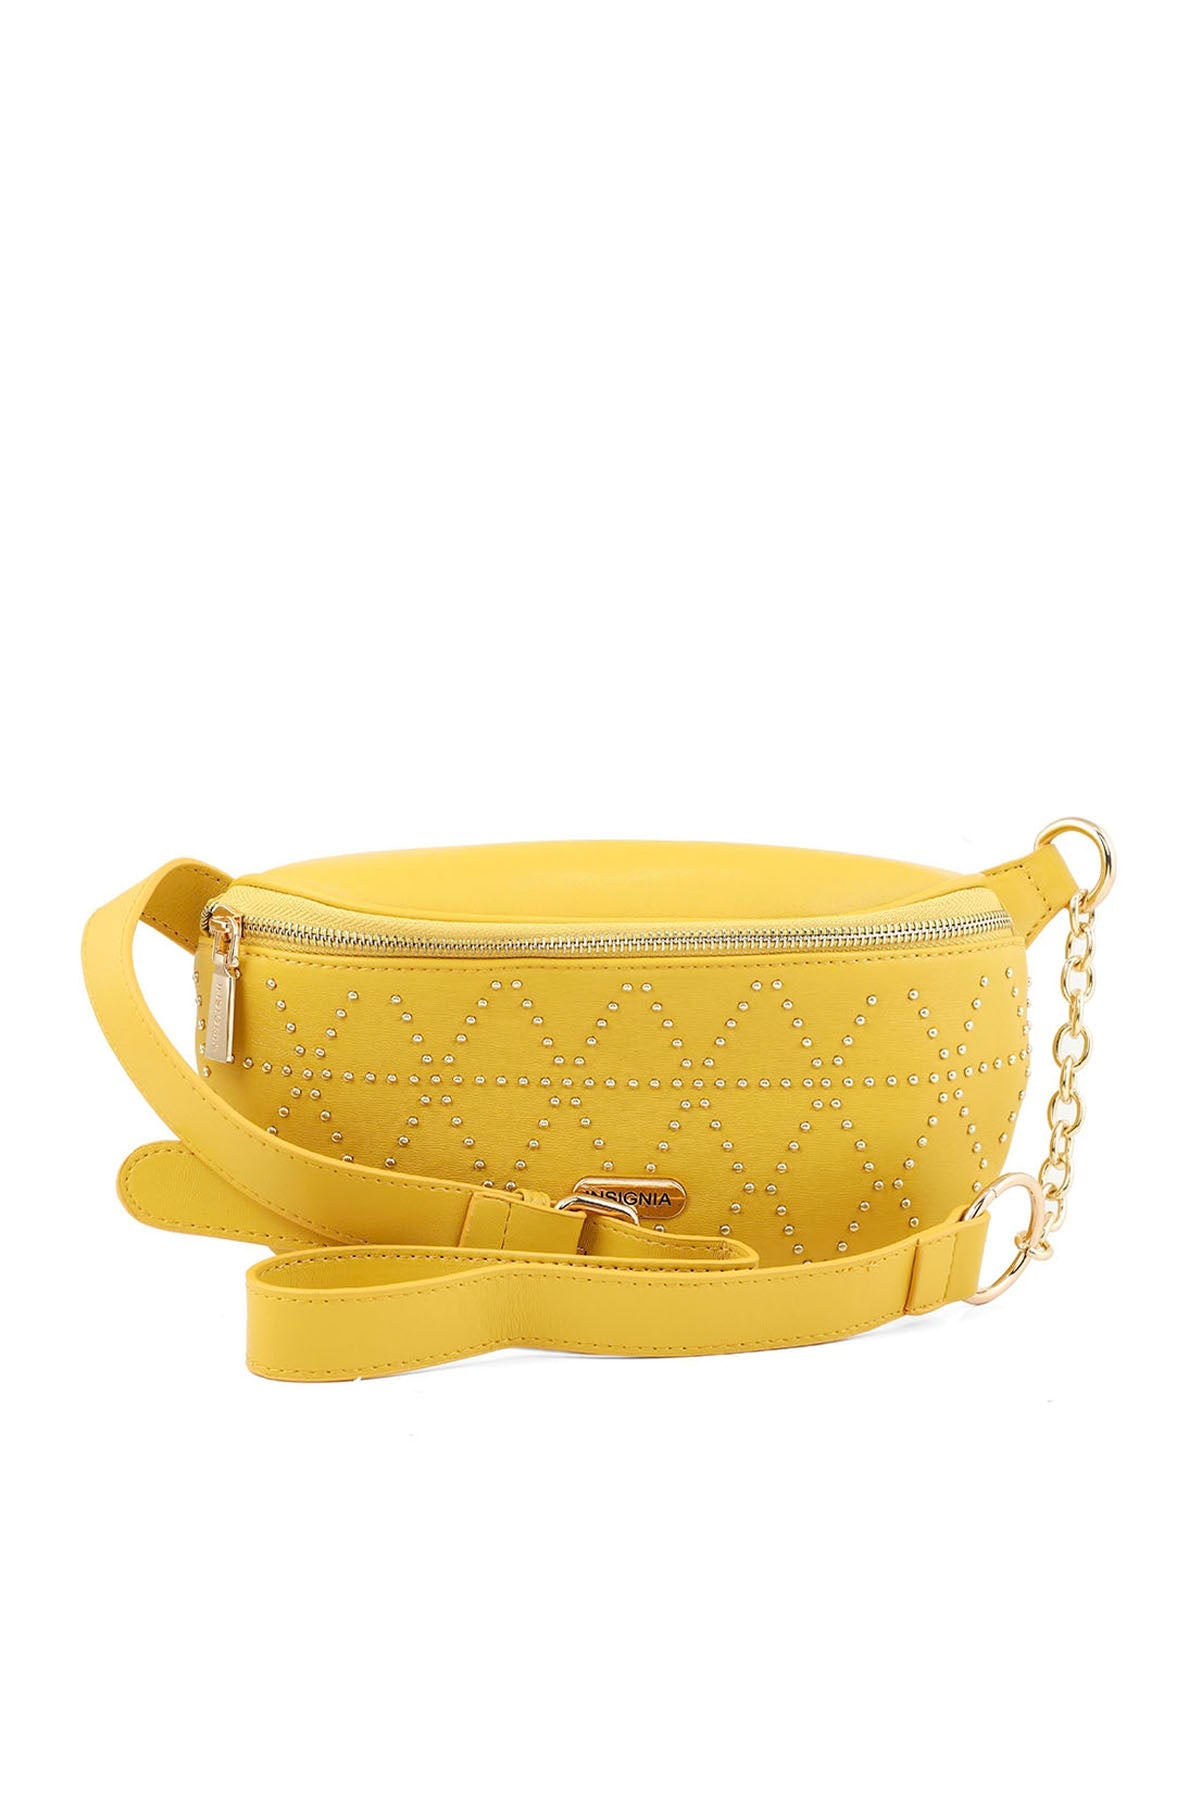 Cross Shoulder Bags B15061-Yellow